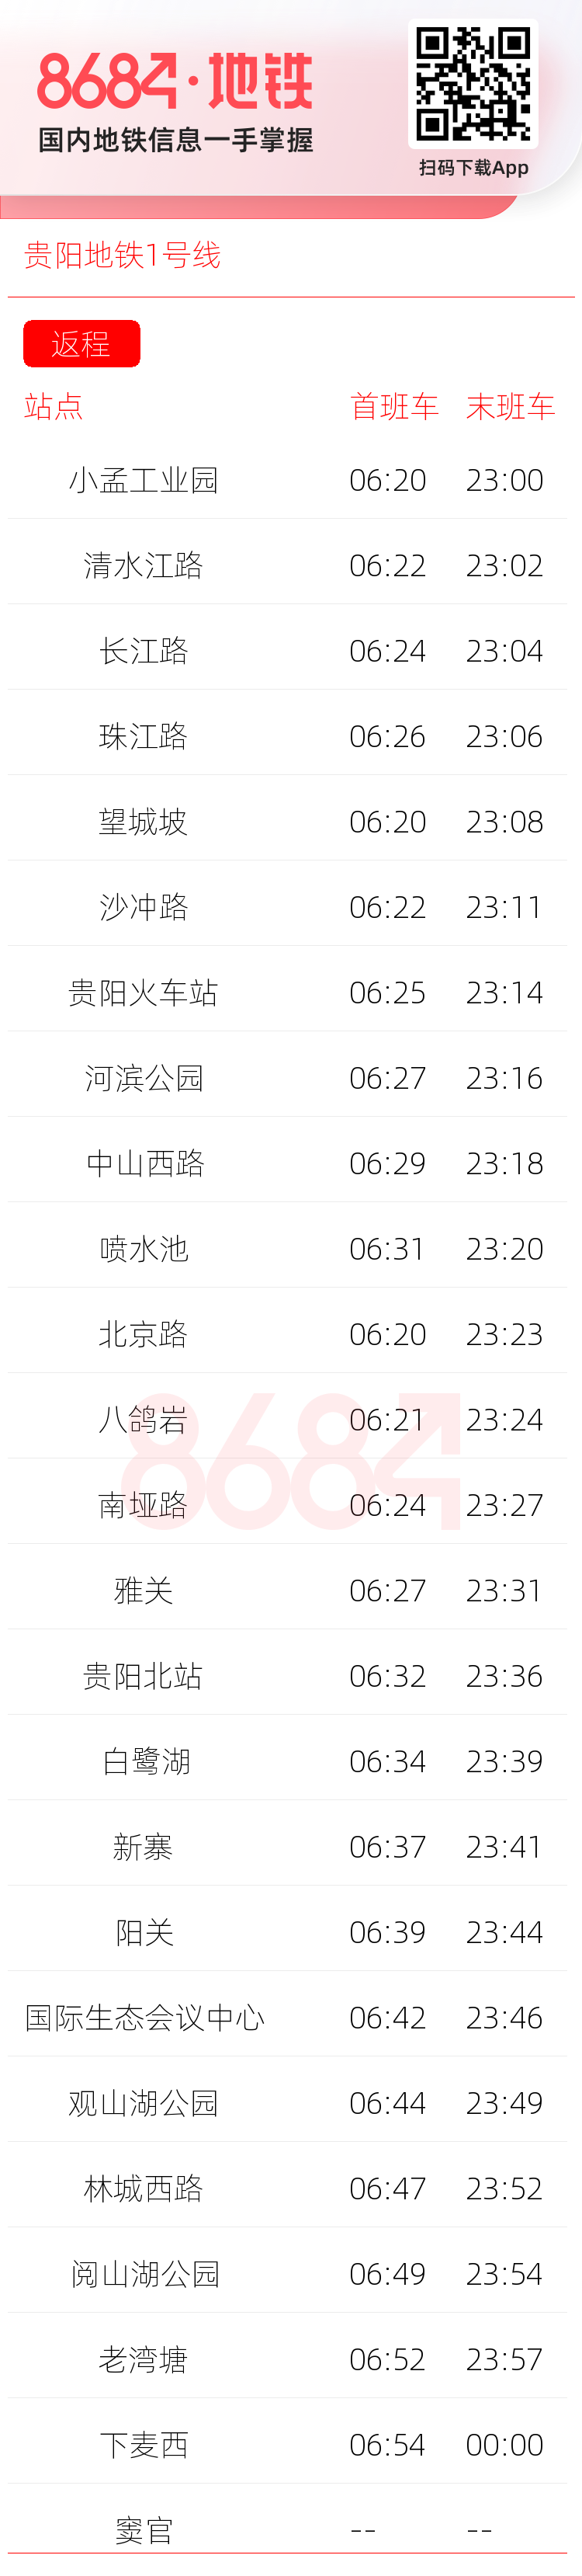 贵阳地铁1号线运营时间表